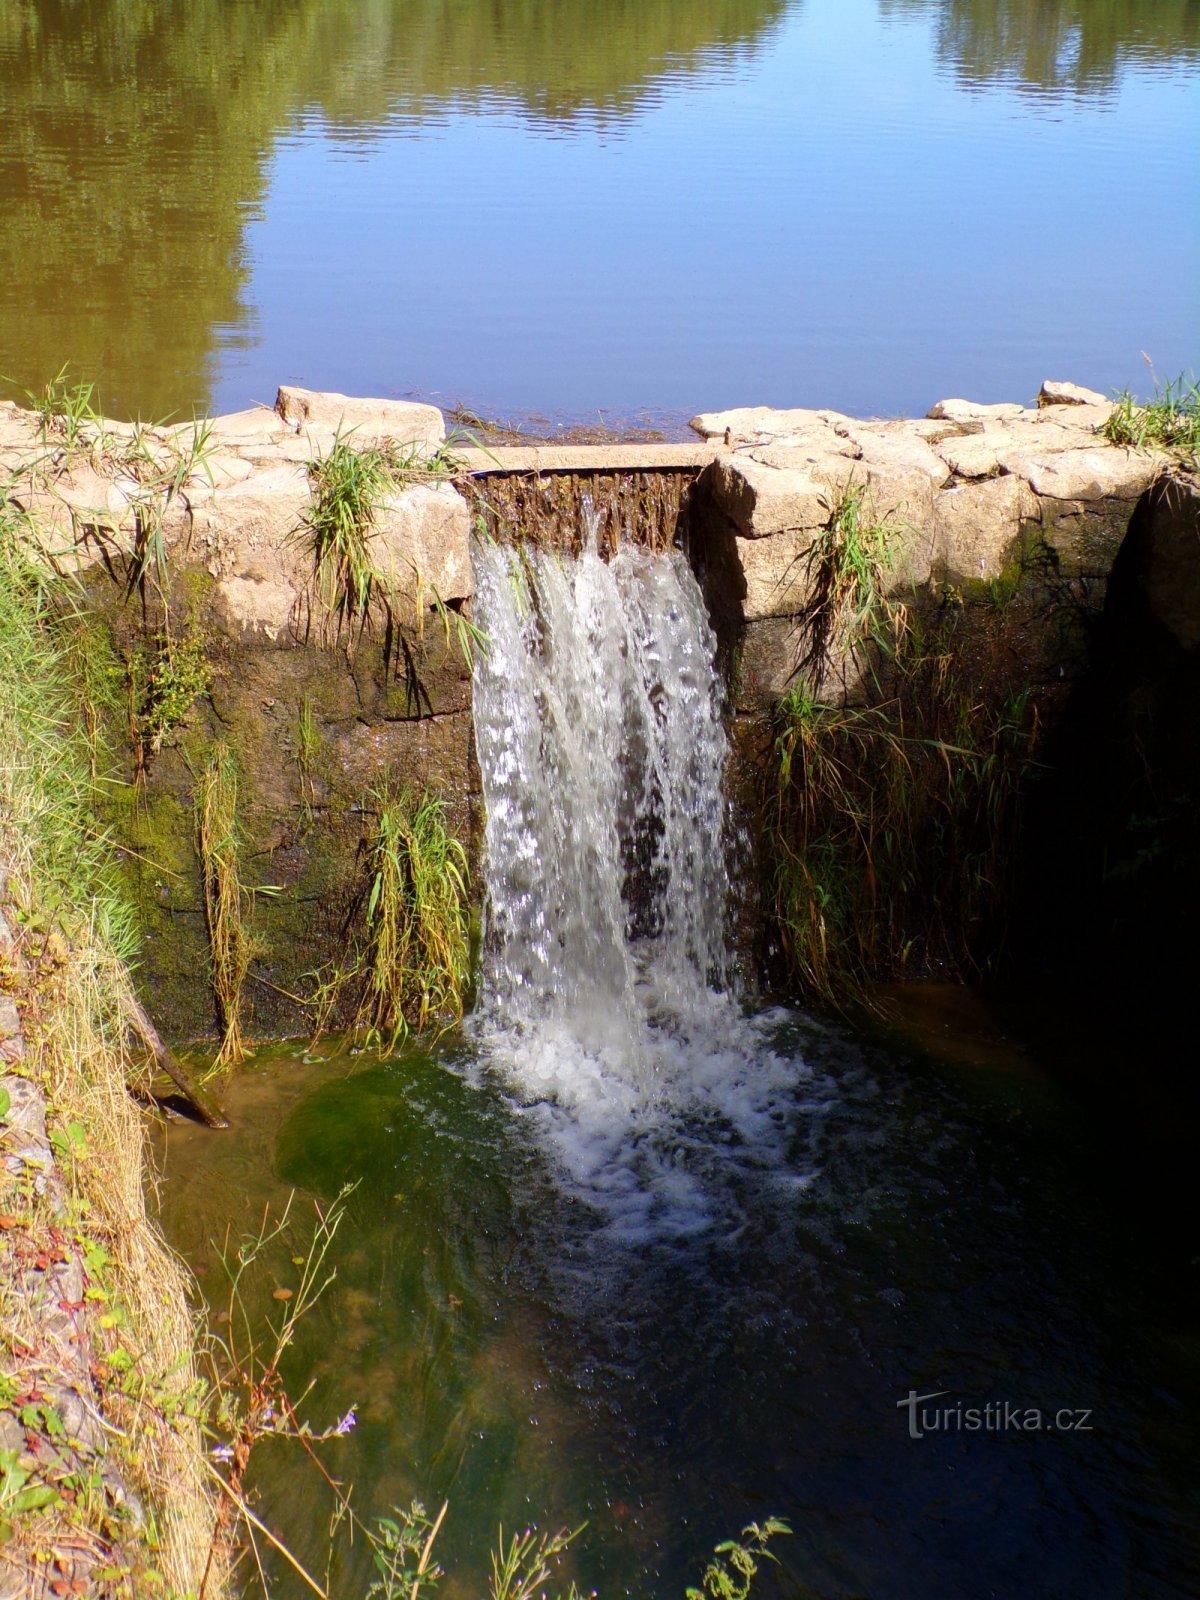 Petirův rybník (Hustířany, 18.7.2022 juli XNUMX)